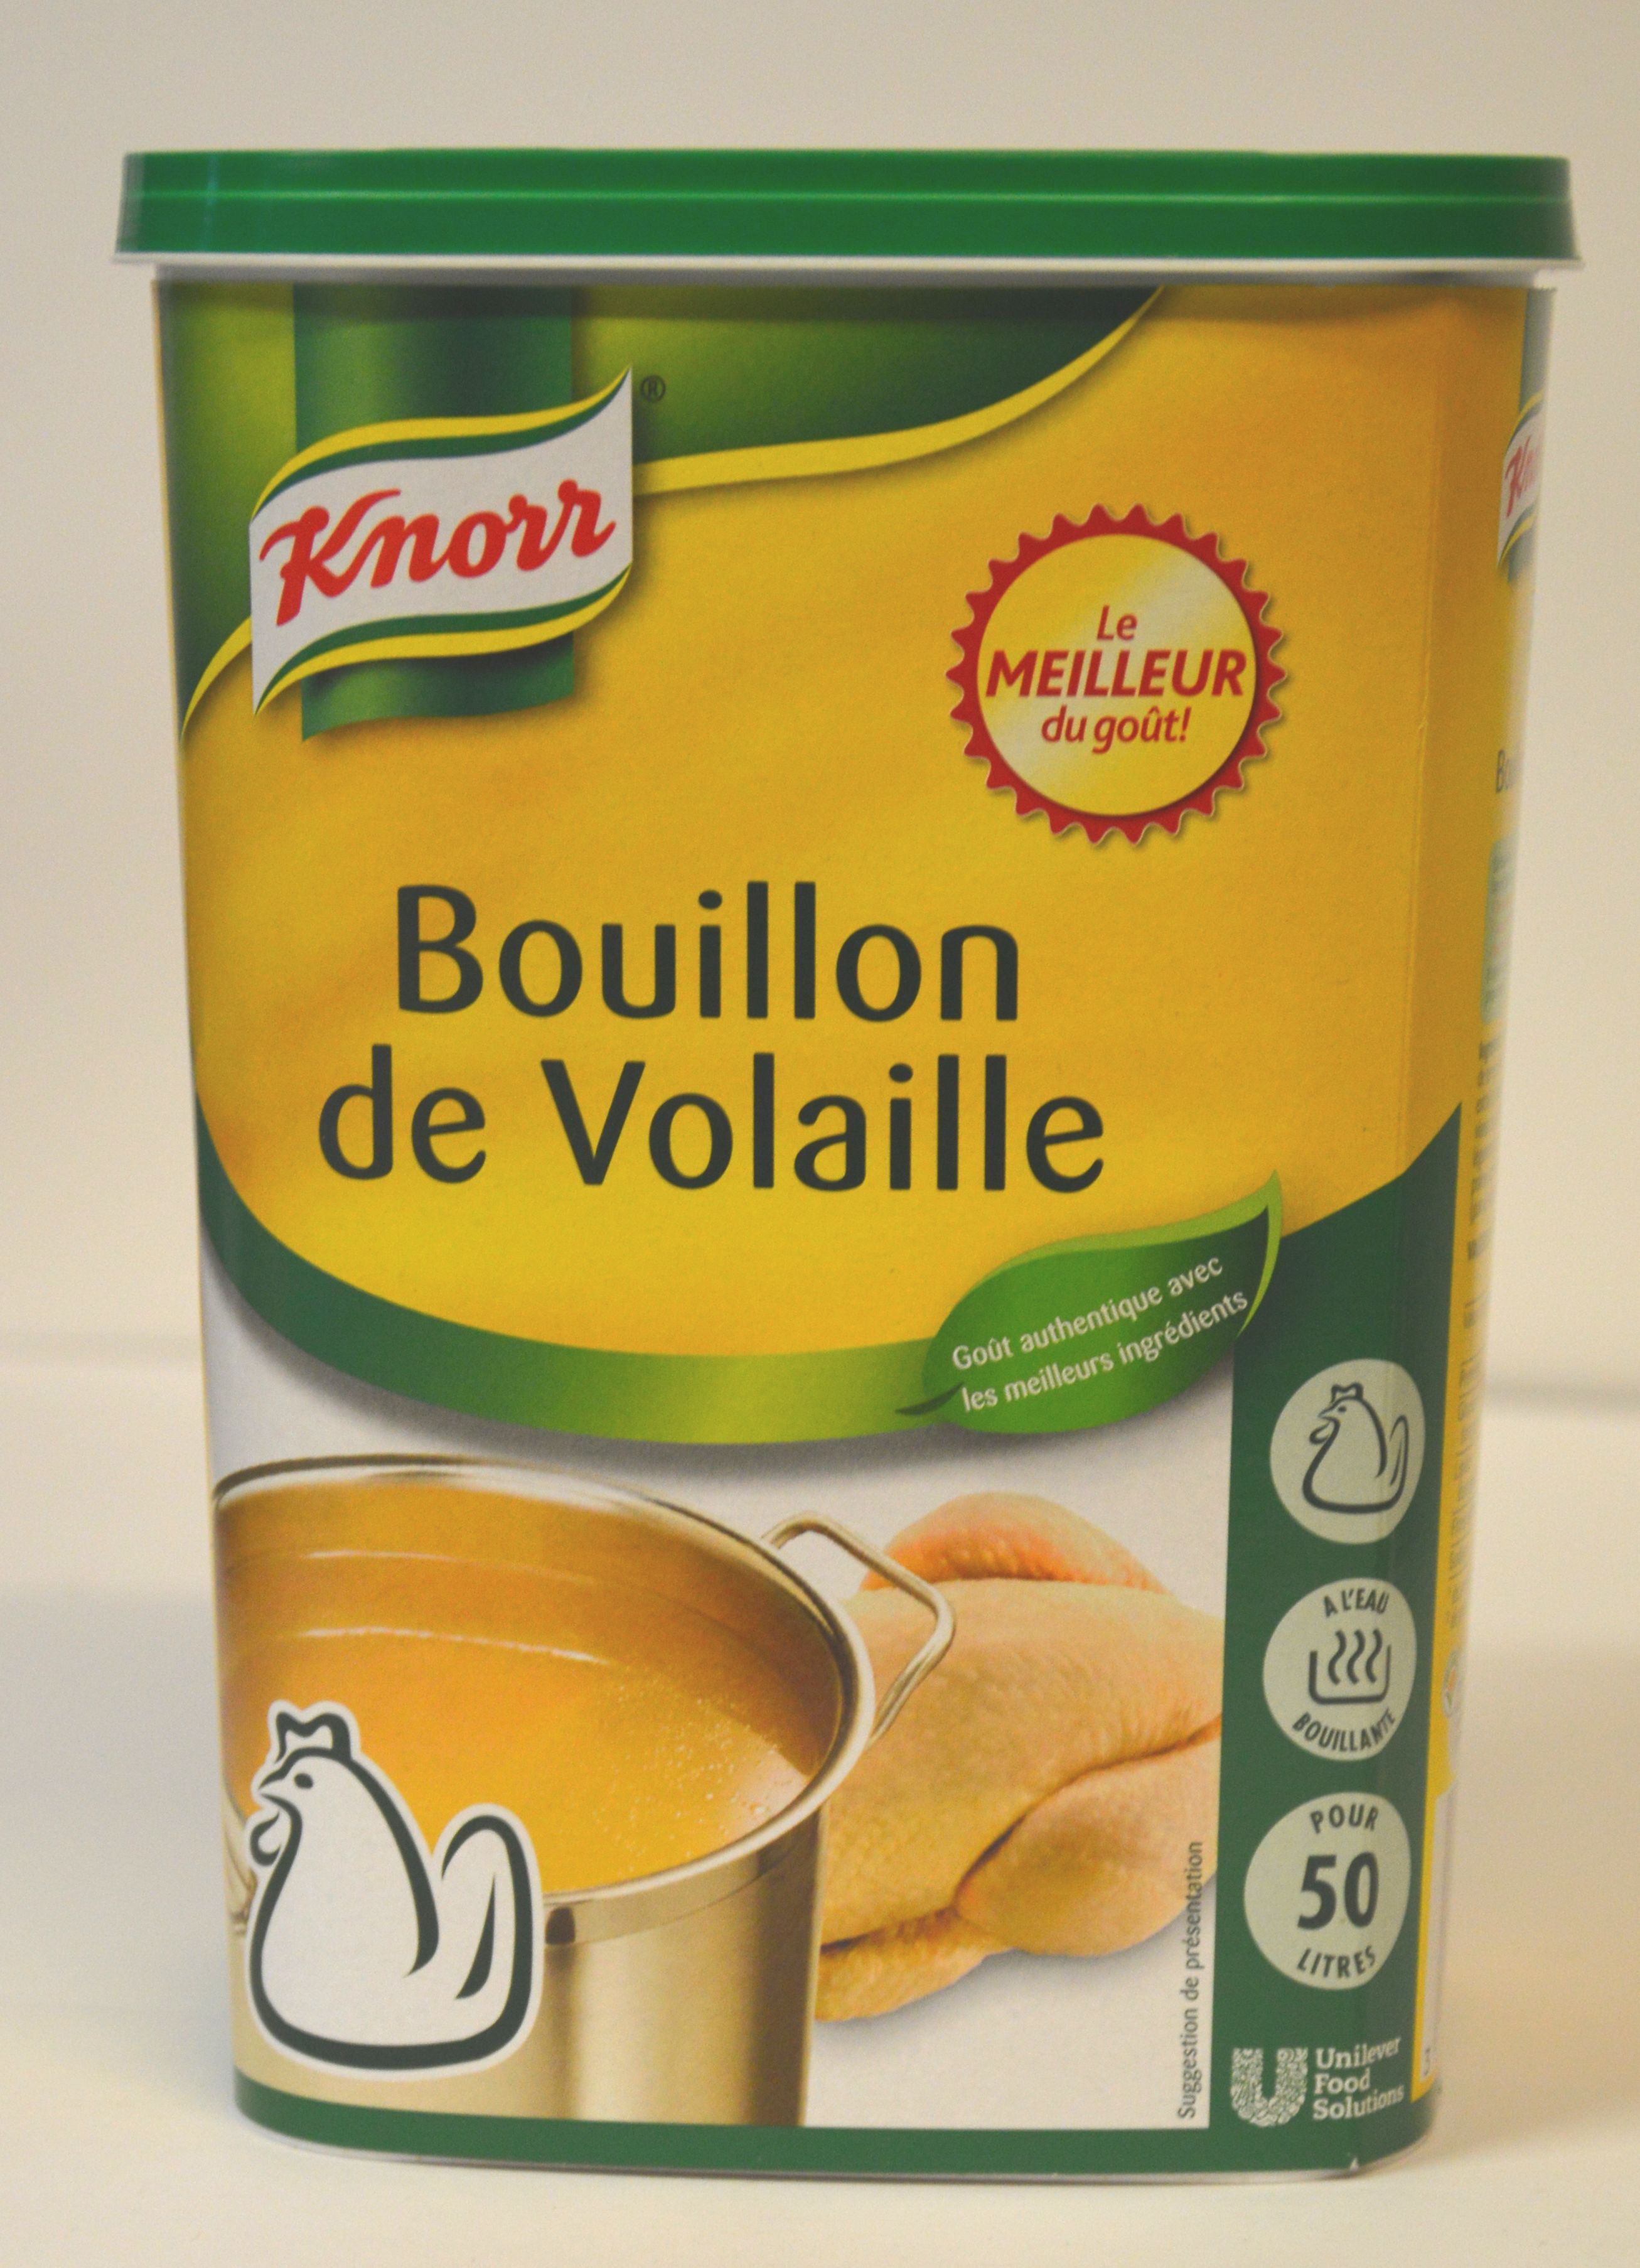 Good épices Bouillon de Volaille Knorr 1kg | Bouillons - Good épices